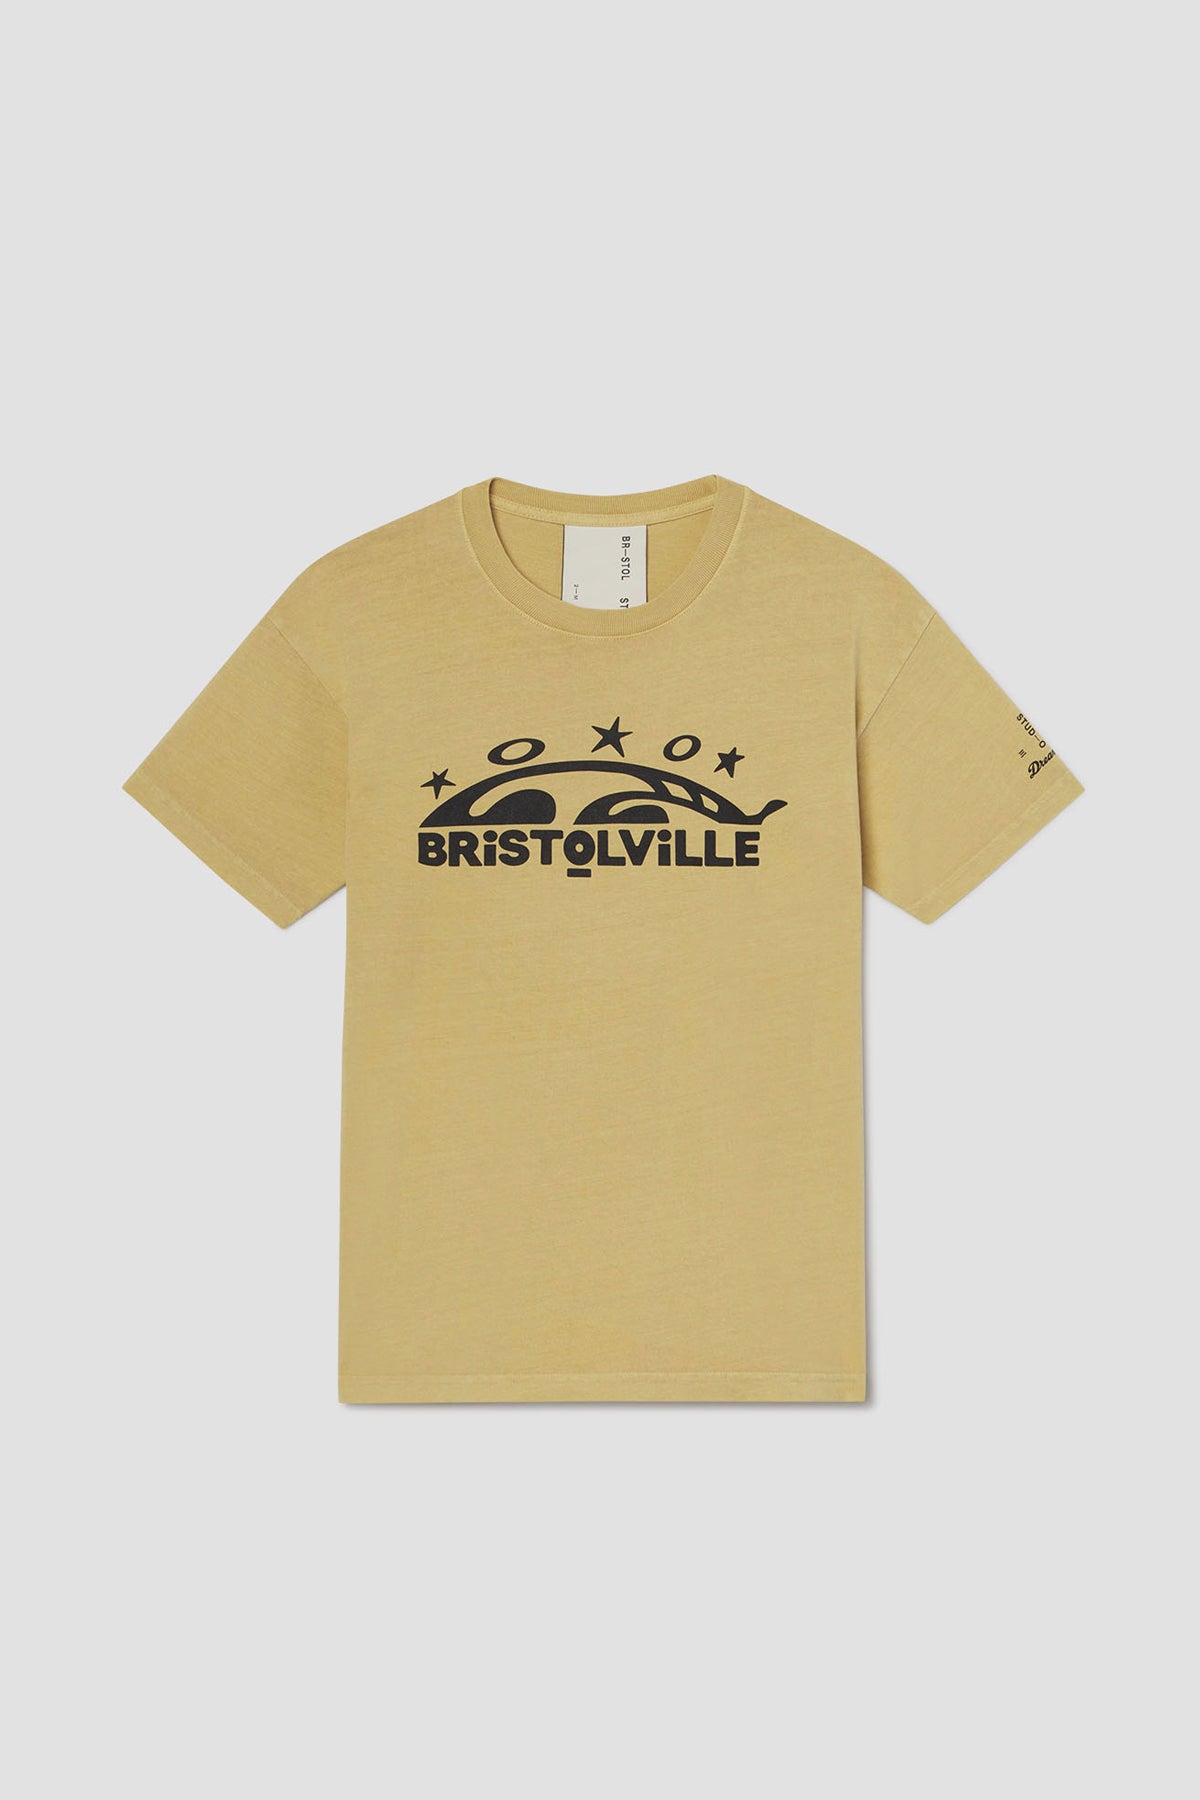 ‘Bristolville' Tee